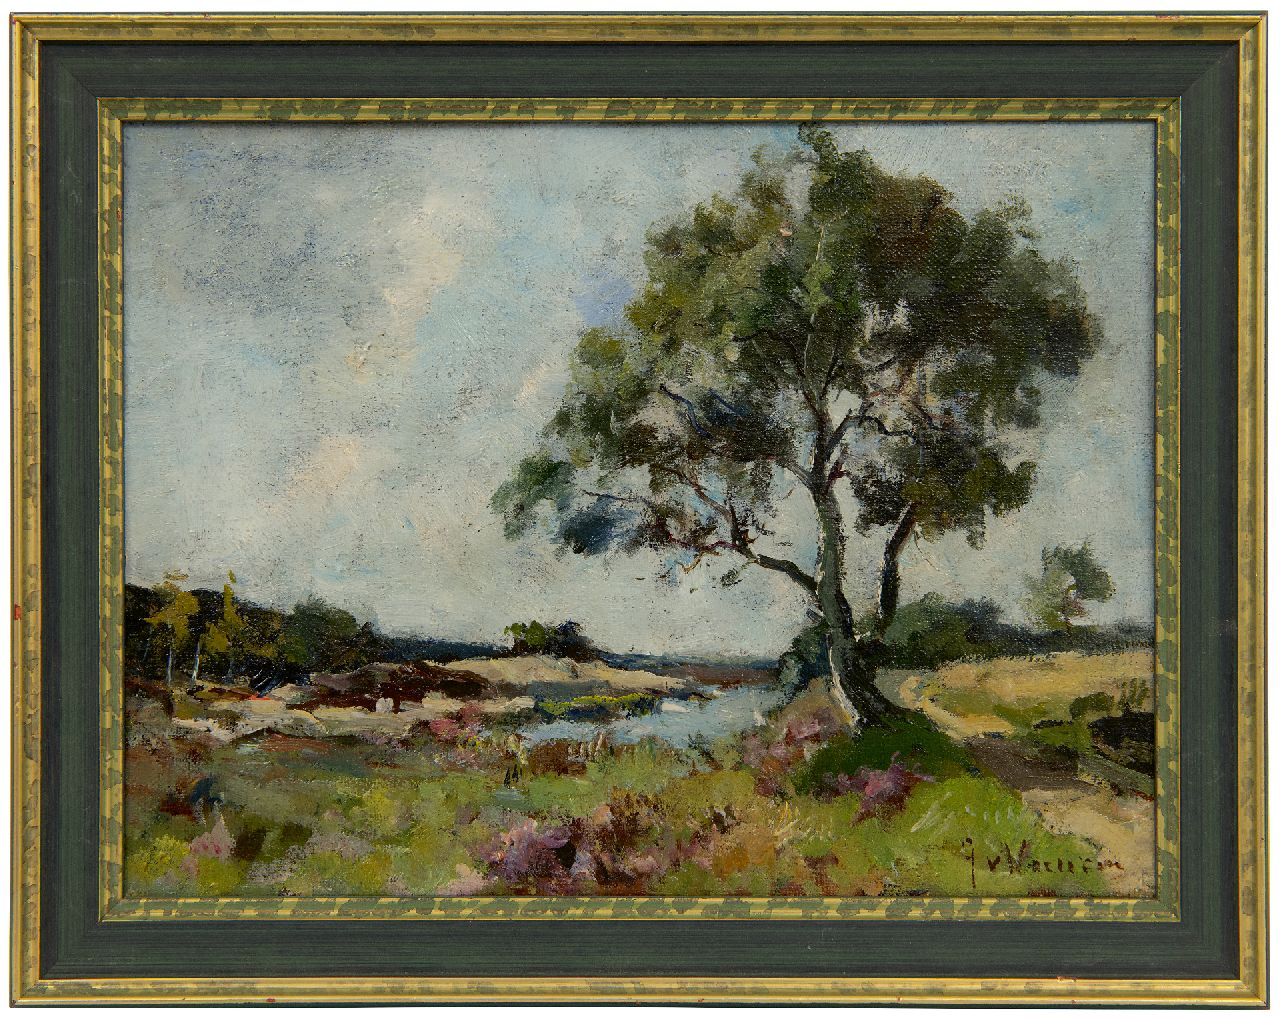 Vuuren J. van | Jan van Vuuren | Schilderijen te koop aangeboden | Heidelandschap met vennetje, olieverf op doek 19,2 x 25,4 cm, gesigneerd rechtsonder